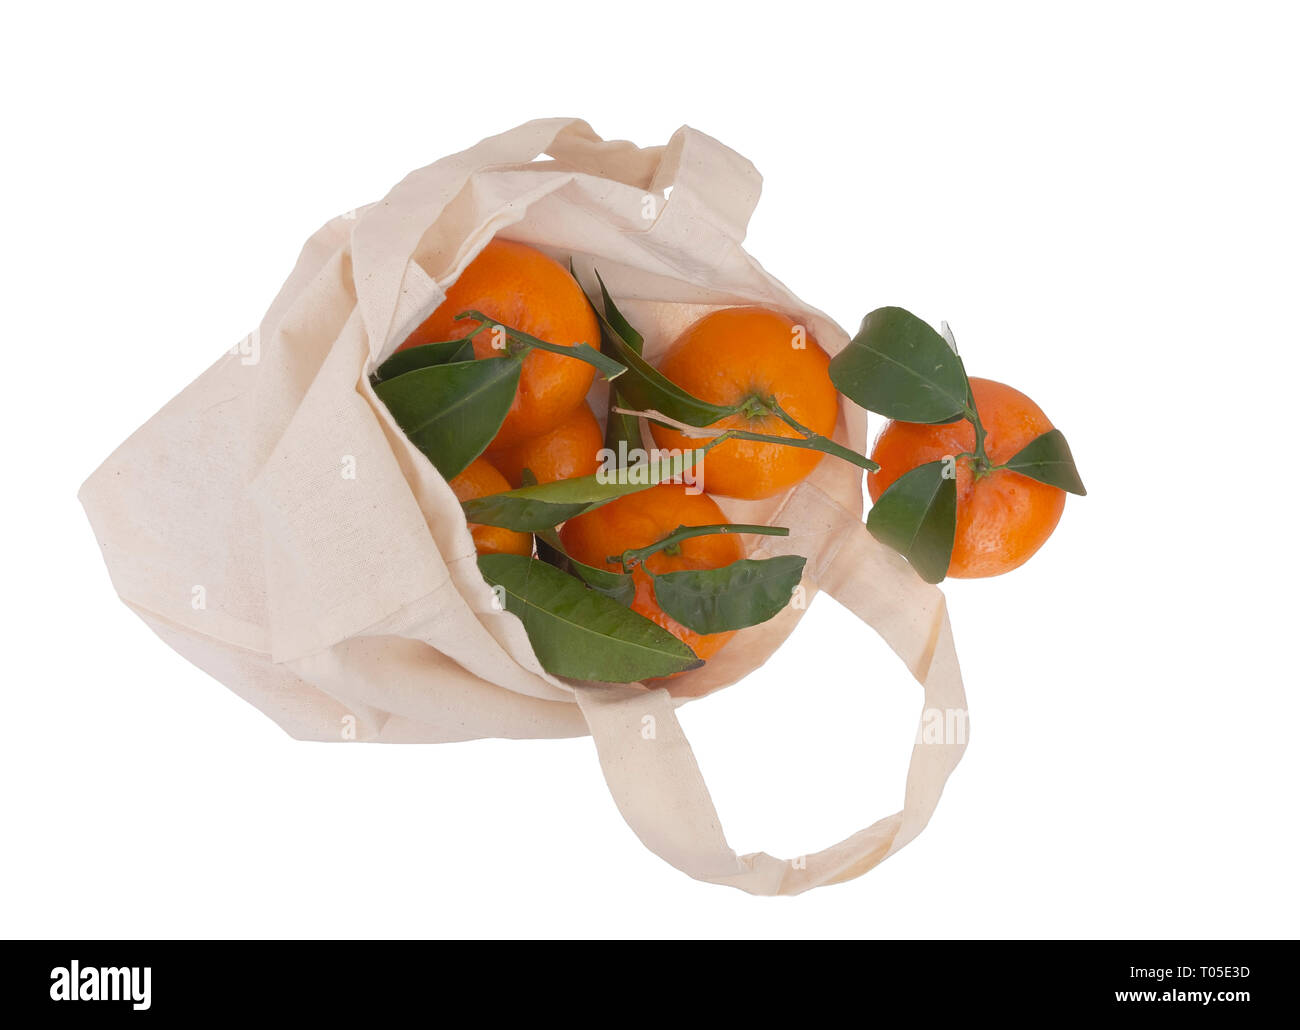 Fresche arance raccolte in riutilizzabili, riciclabili tessuto shopping tote bag, isolato su bianco. Per rispettosi dell'ambiente, verde i consumatori. Foto Stock